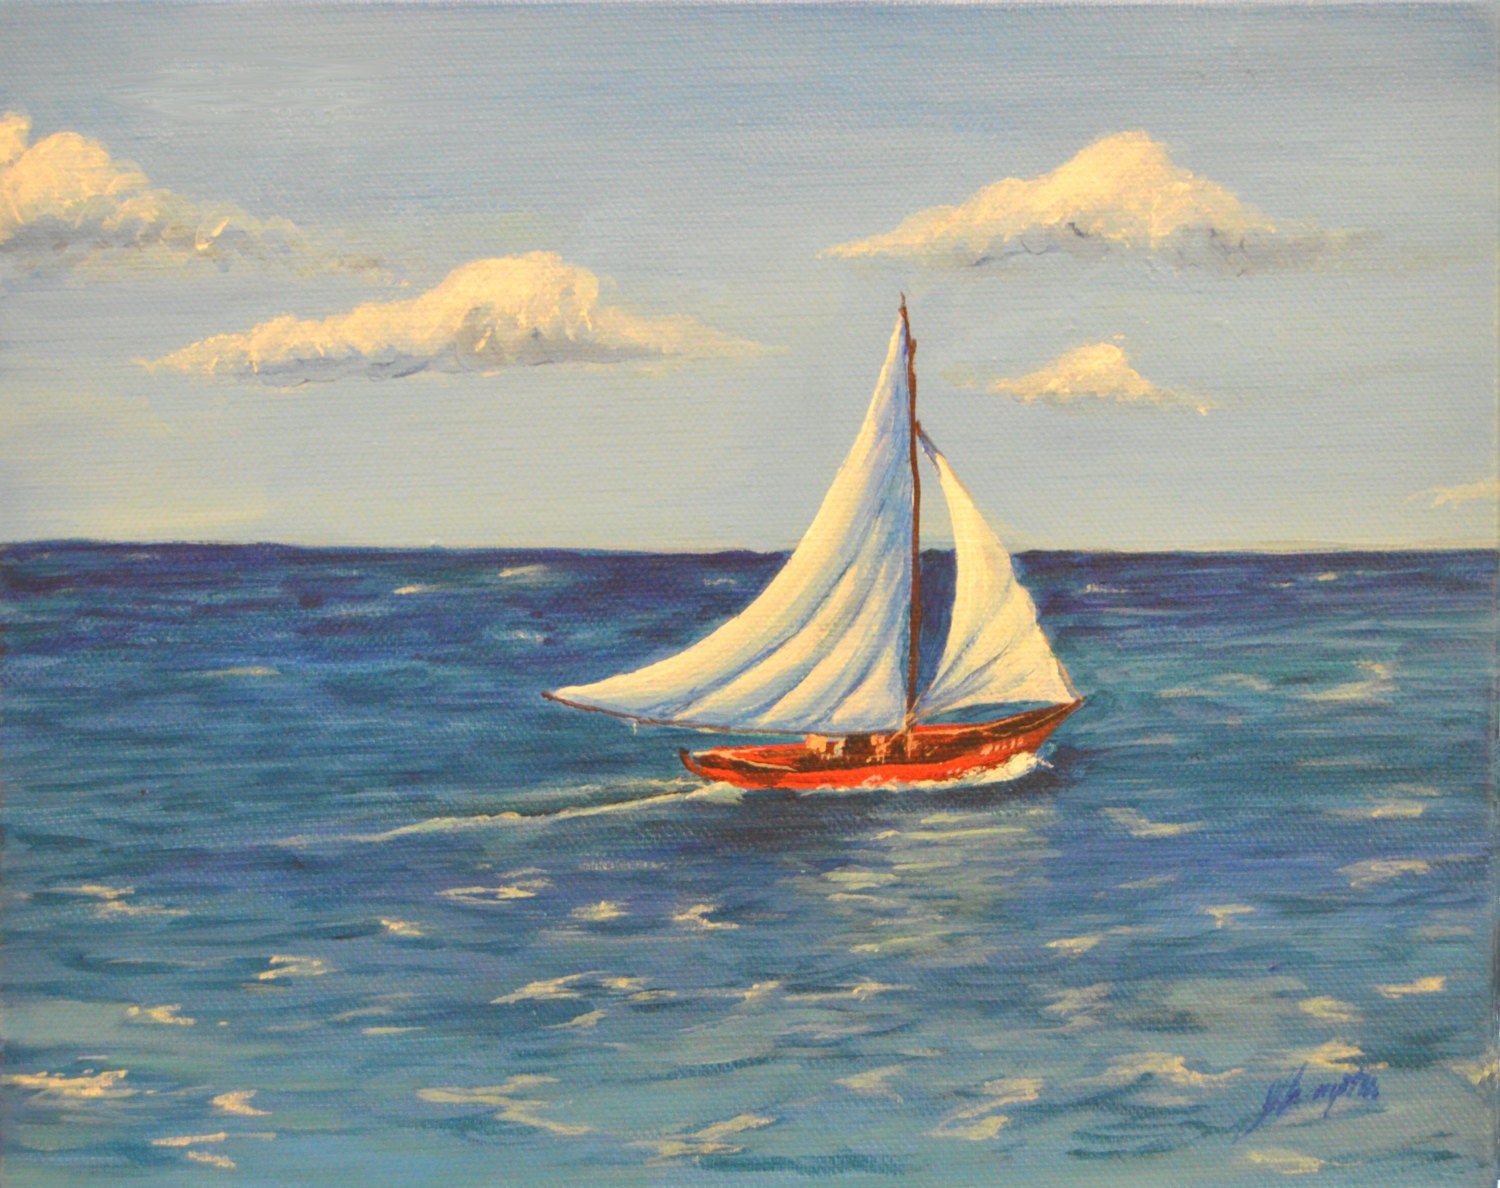 painting a sailboat mast